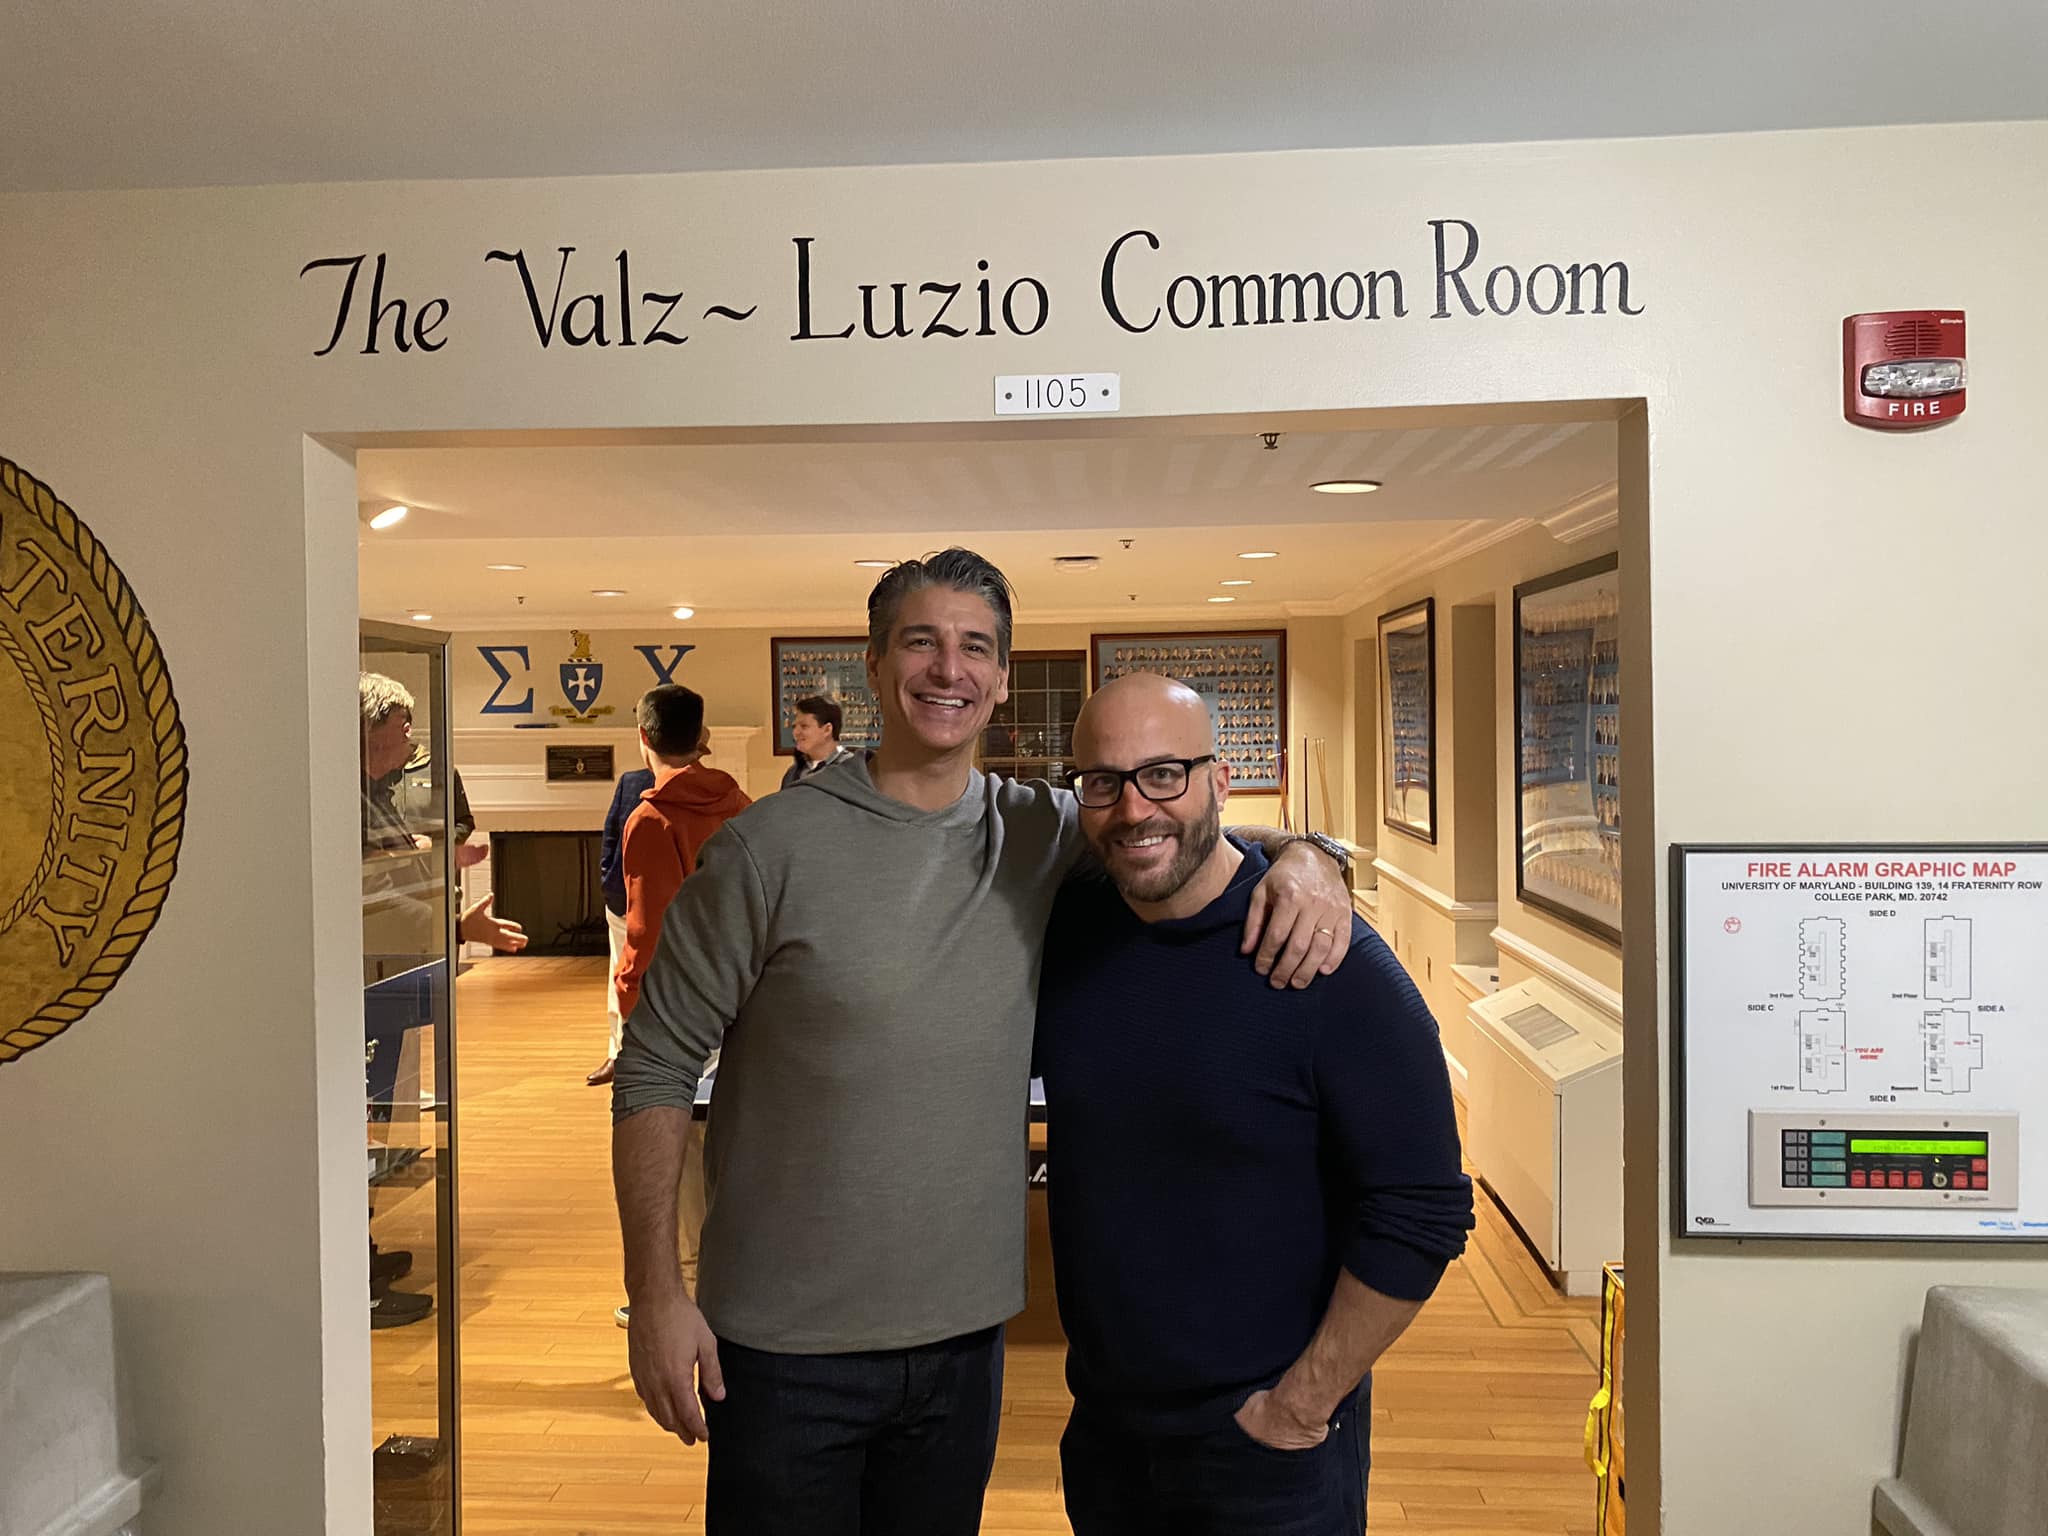 The Valz-Luzio Common Room Dedication